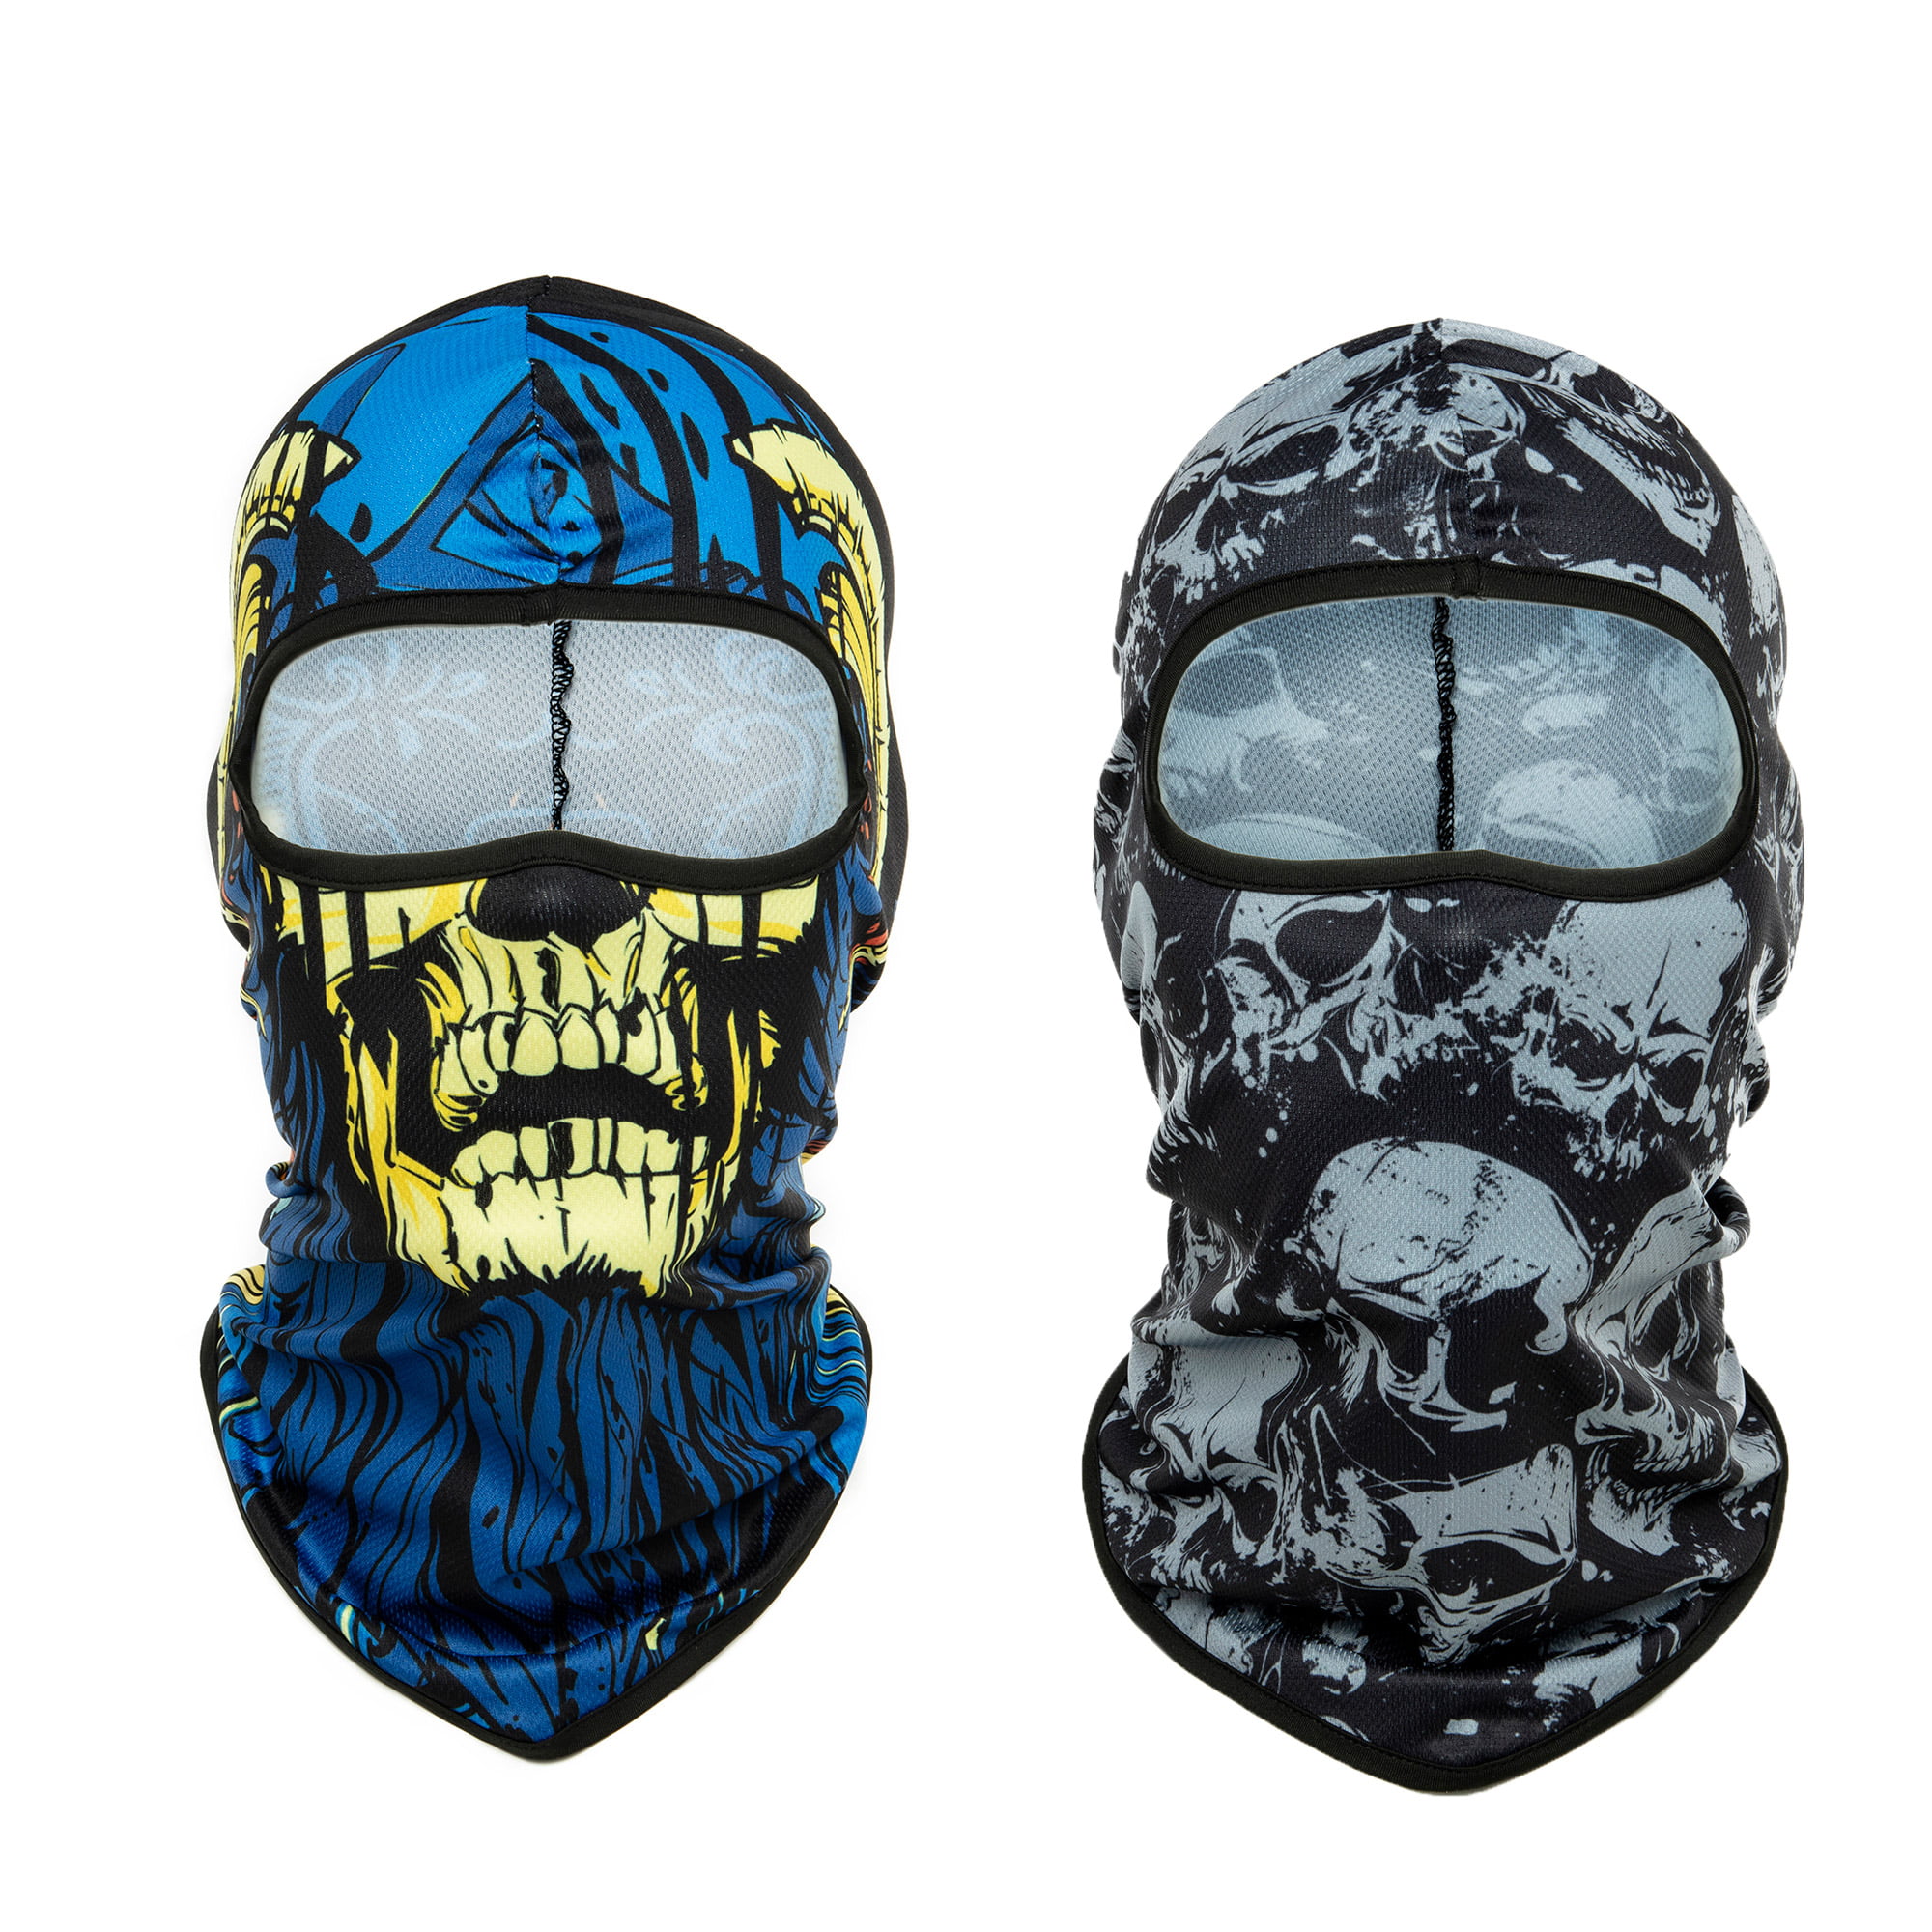 DODOING - Unisex Face Mask Breathable Face 3D Print Ski Balaclava ...